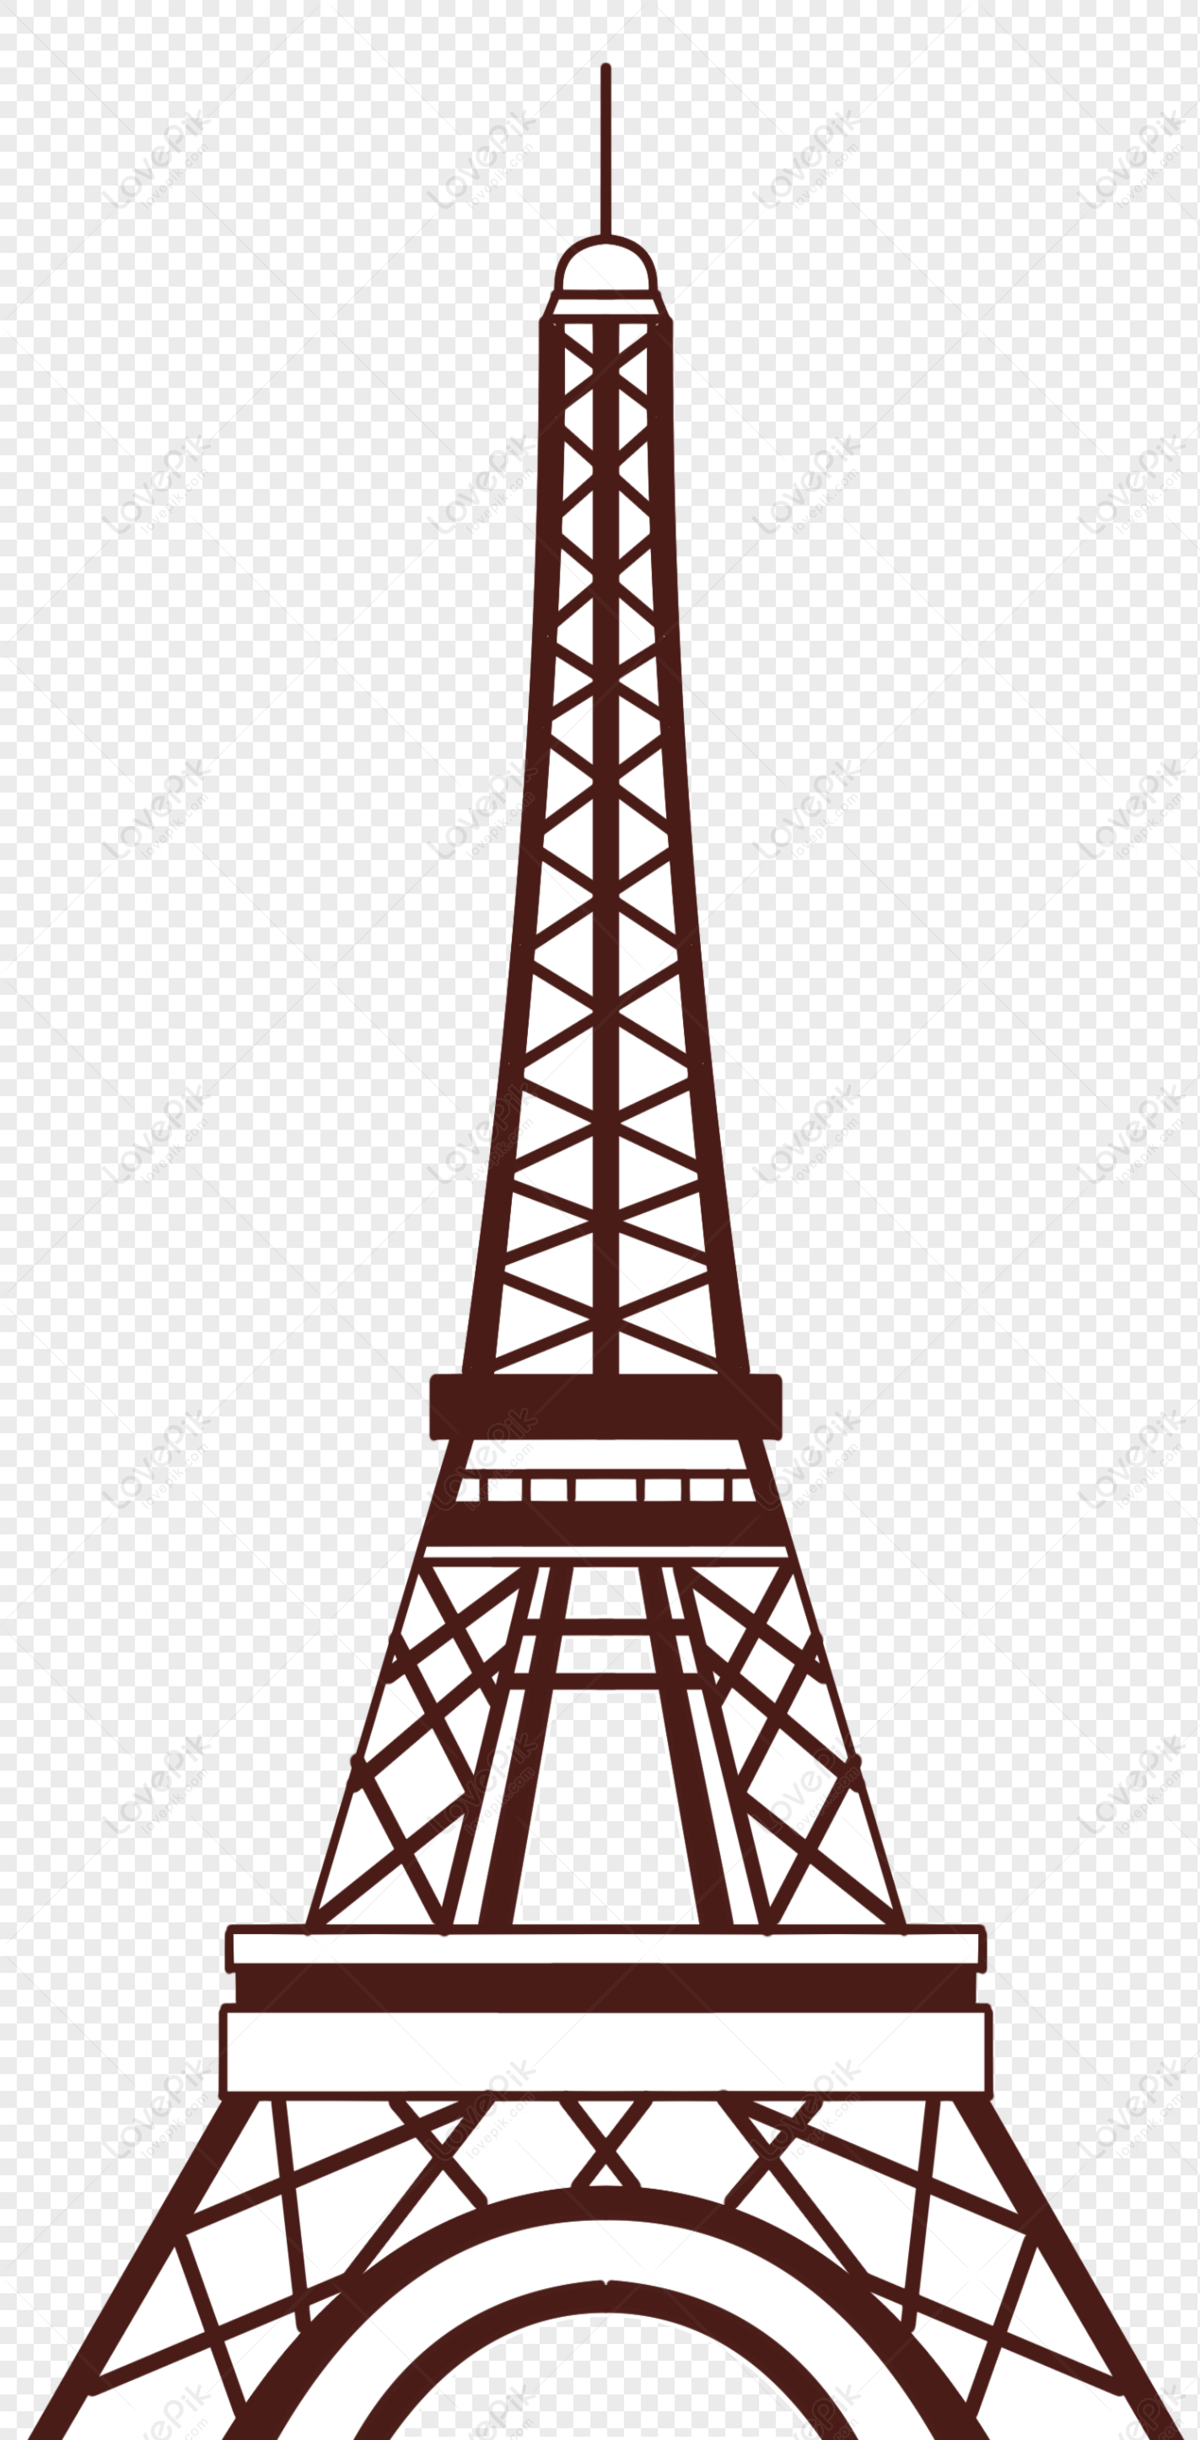 Hình ảnh nền trong suốt về Tháp Eiffel sẽ khiến bộ phim của bạn trở nên sống động hơn bao giờ hết. Với tấm nền trong suốt Eiffel Tower, bạn có thể chèn những hình ảnh khác vào một cách rất tinh tế, tạo ra một bộ phim độc đáo và mới lạ.